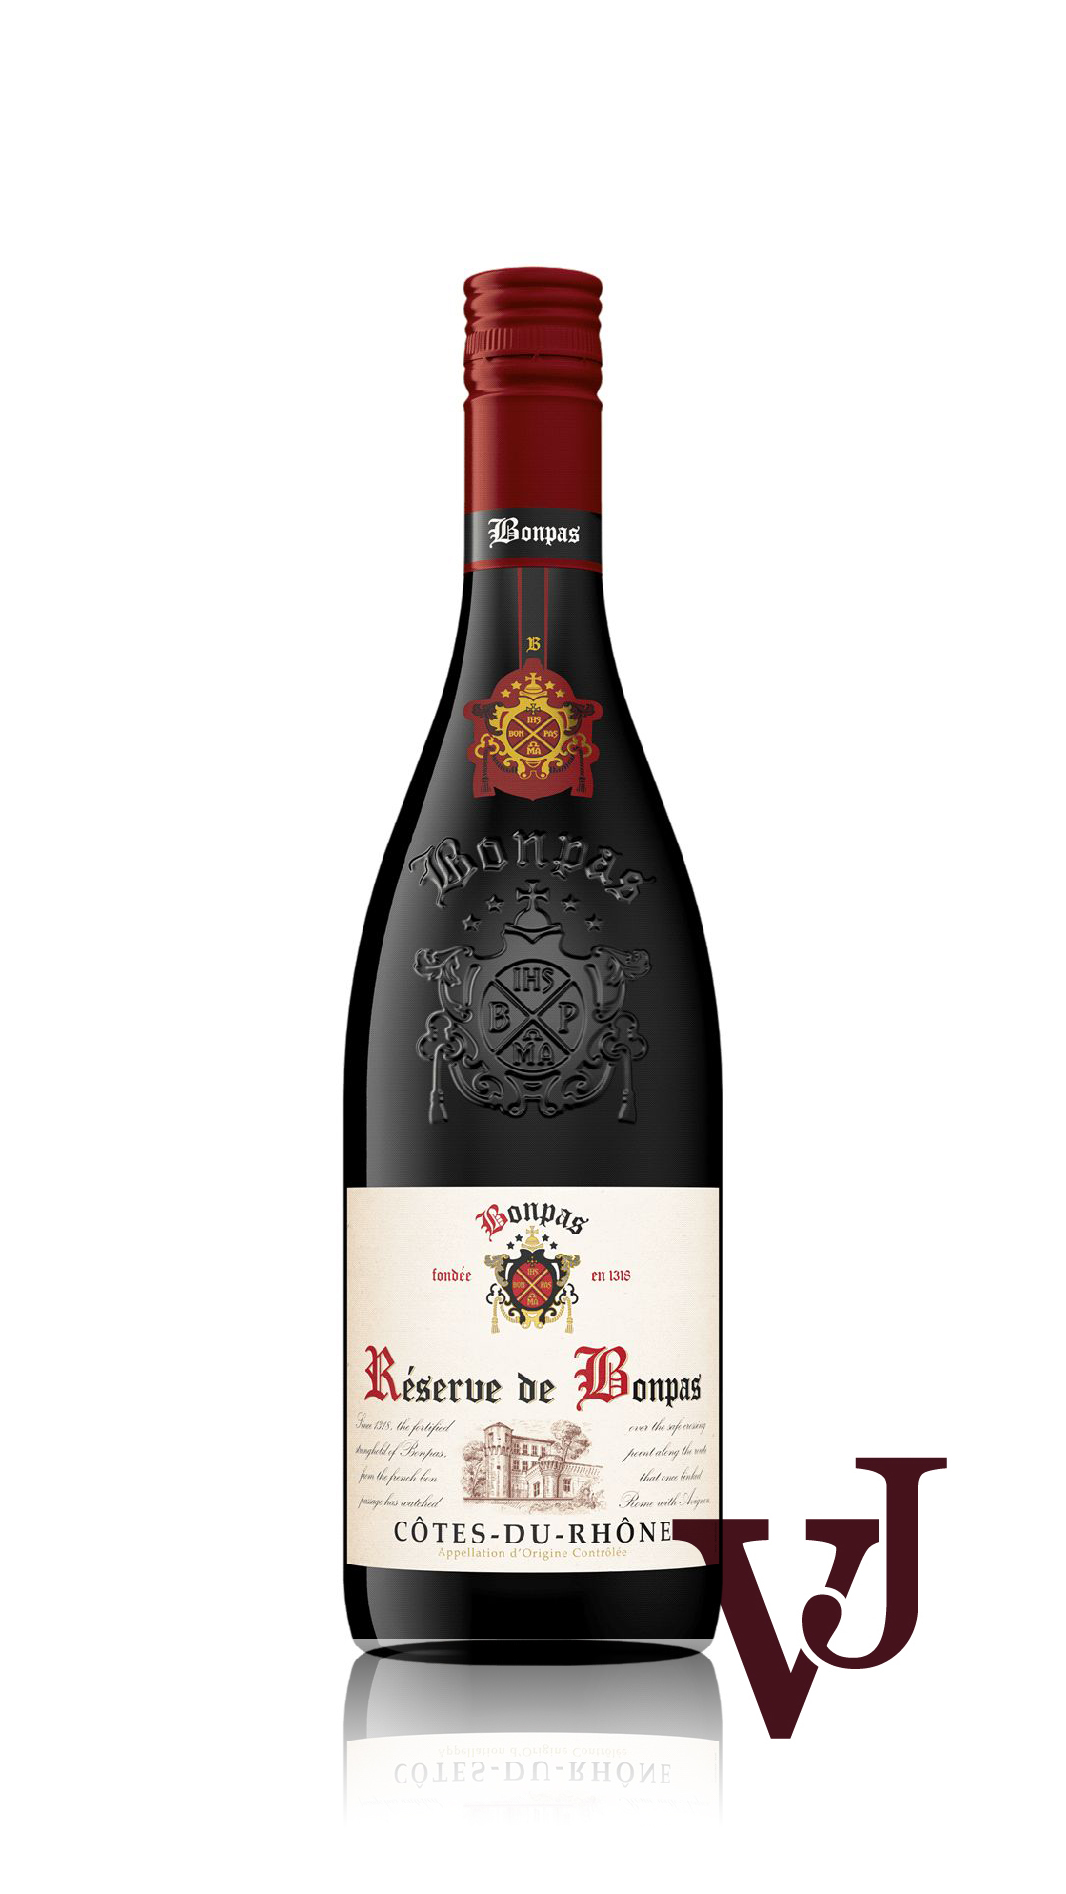 Rött Vin - Réserve de Bonpas Côtes-du-Rhône artikel nummer 201601 från producenten Bonpas från området Frankrike